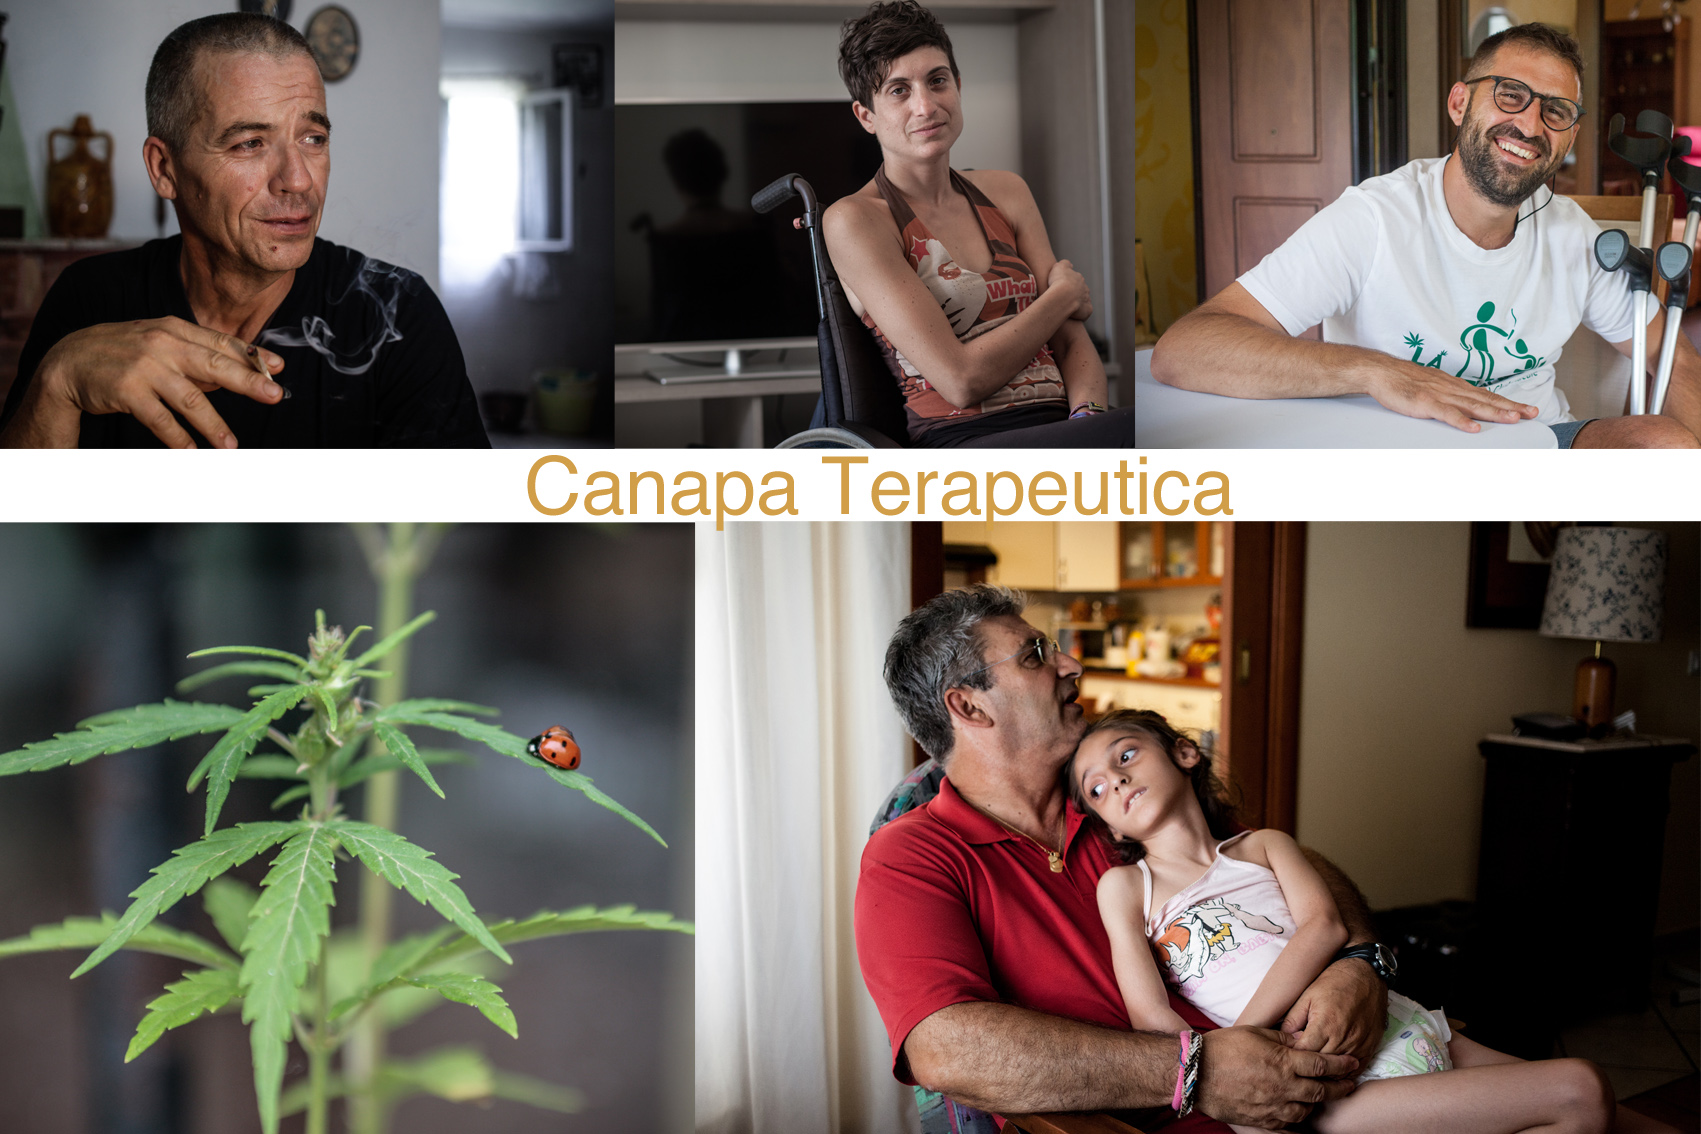 Curarsi con la Canapa in ItaliaI volti dei malati che usano la cannabis: persone normali che vogliono avere il diritto a vivere meglio 